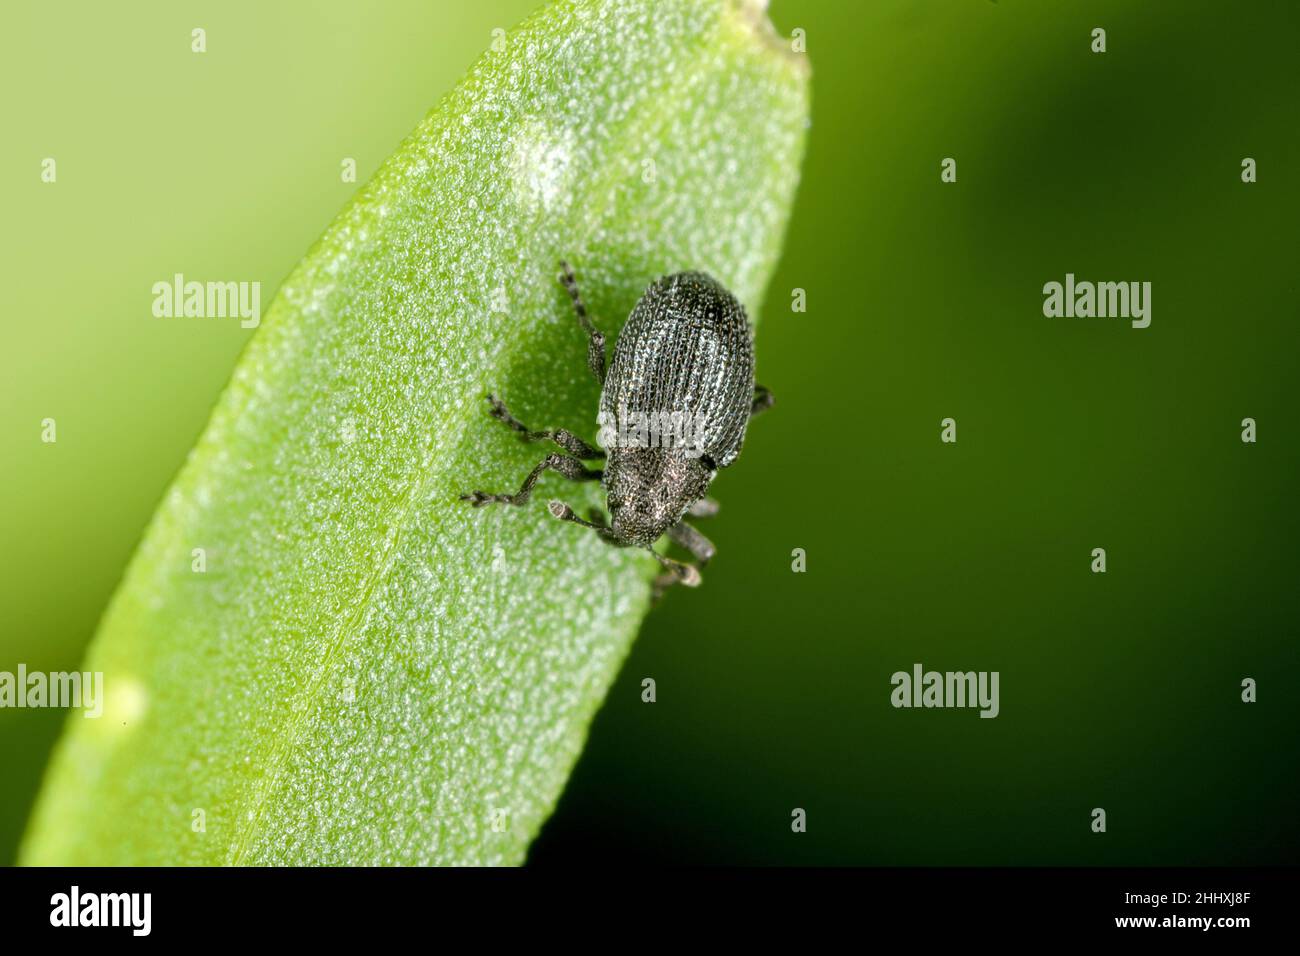 Ein winziger Käfer der Gattung Ceutorhynchus auf einer beschädigten Rucola-Pflanze - Eruca sativa. Stockfoto